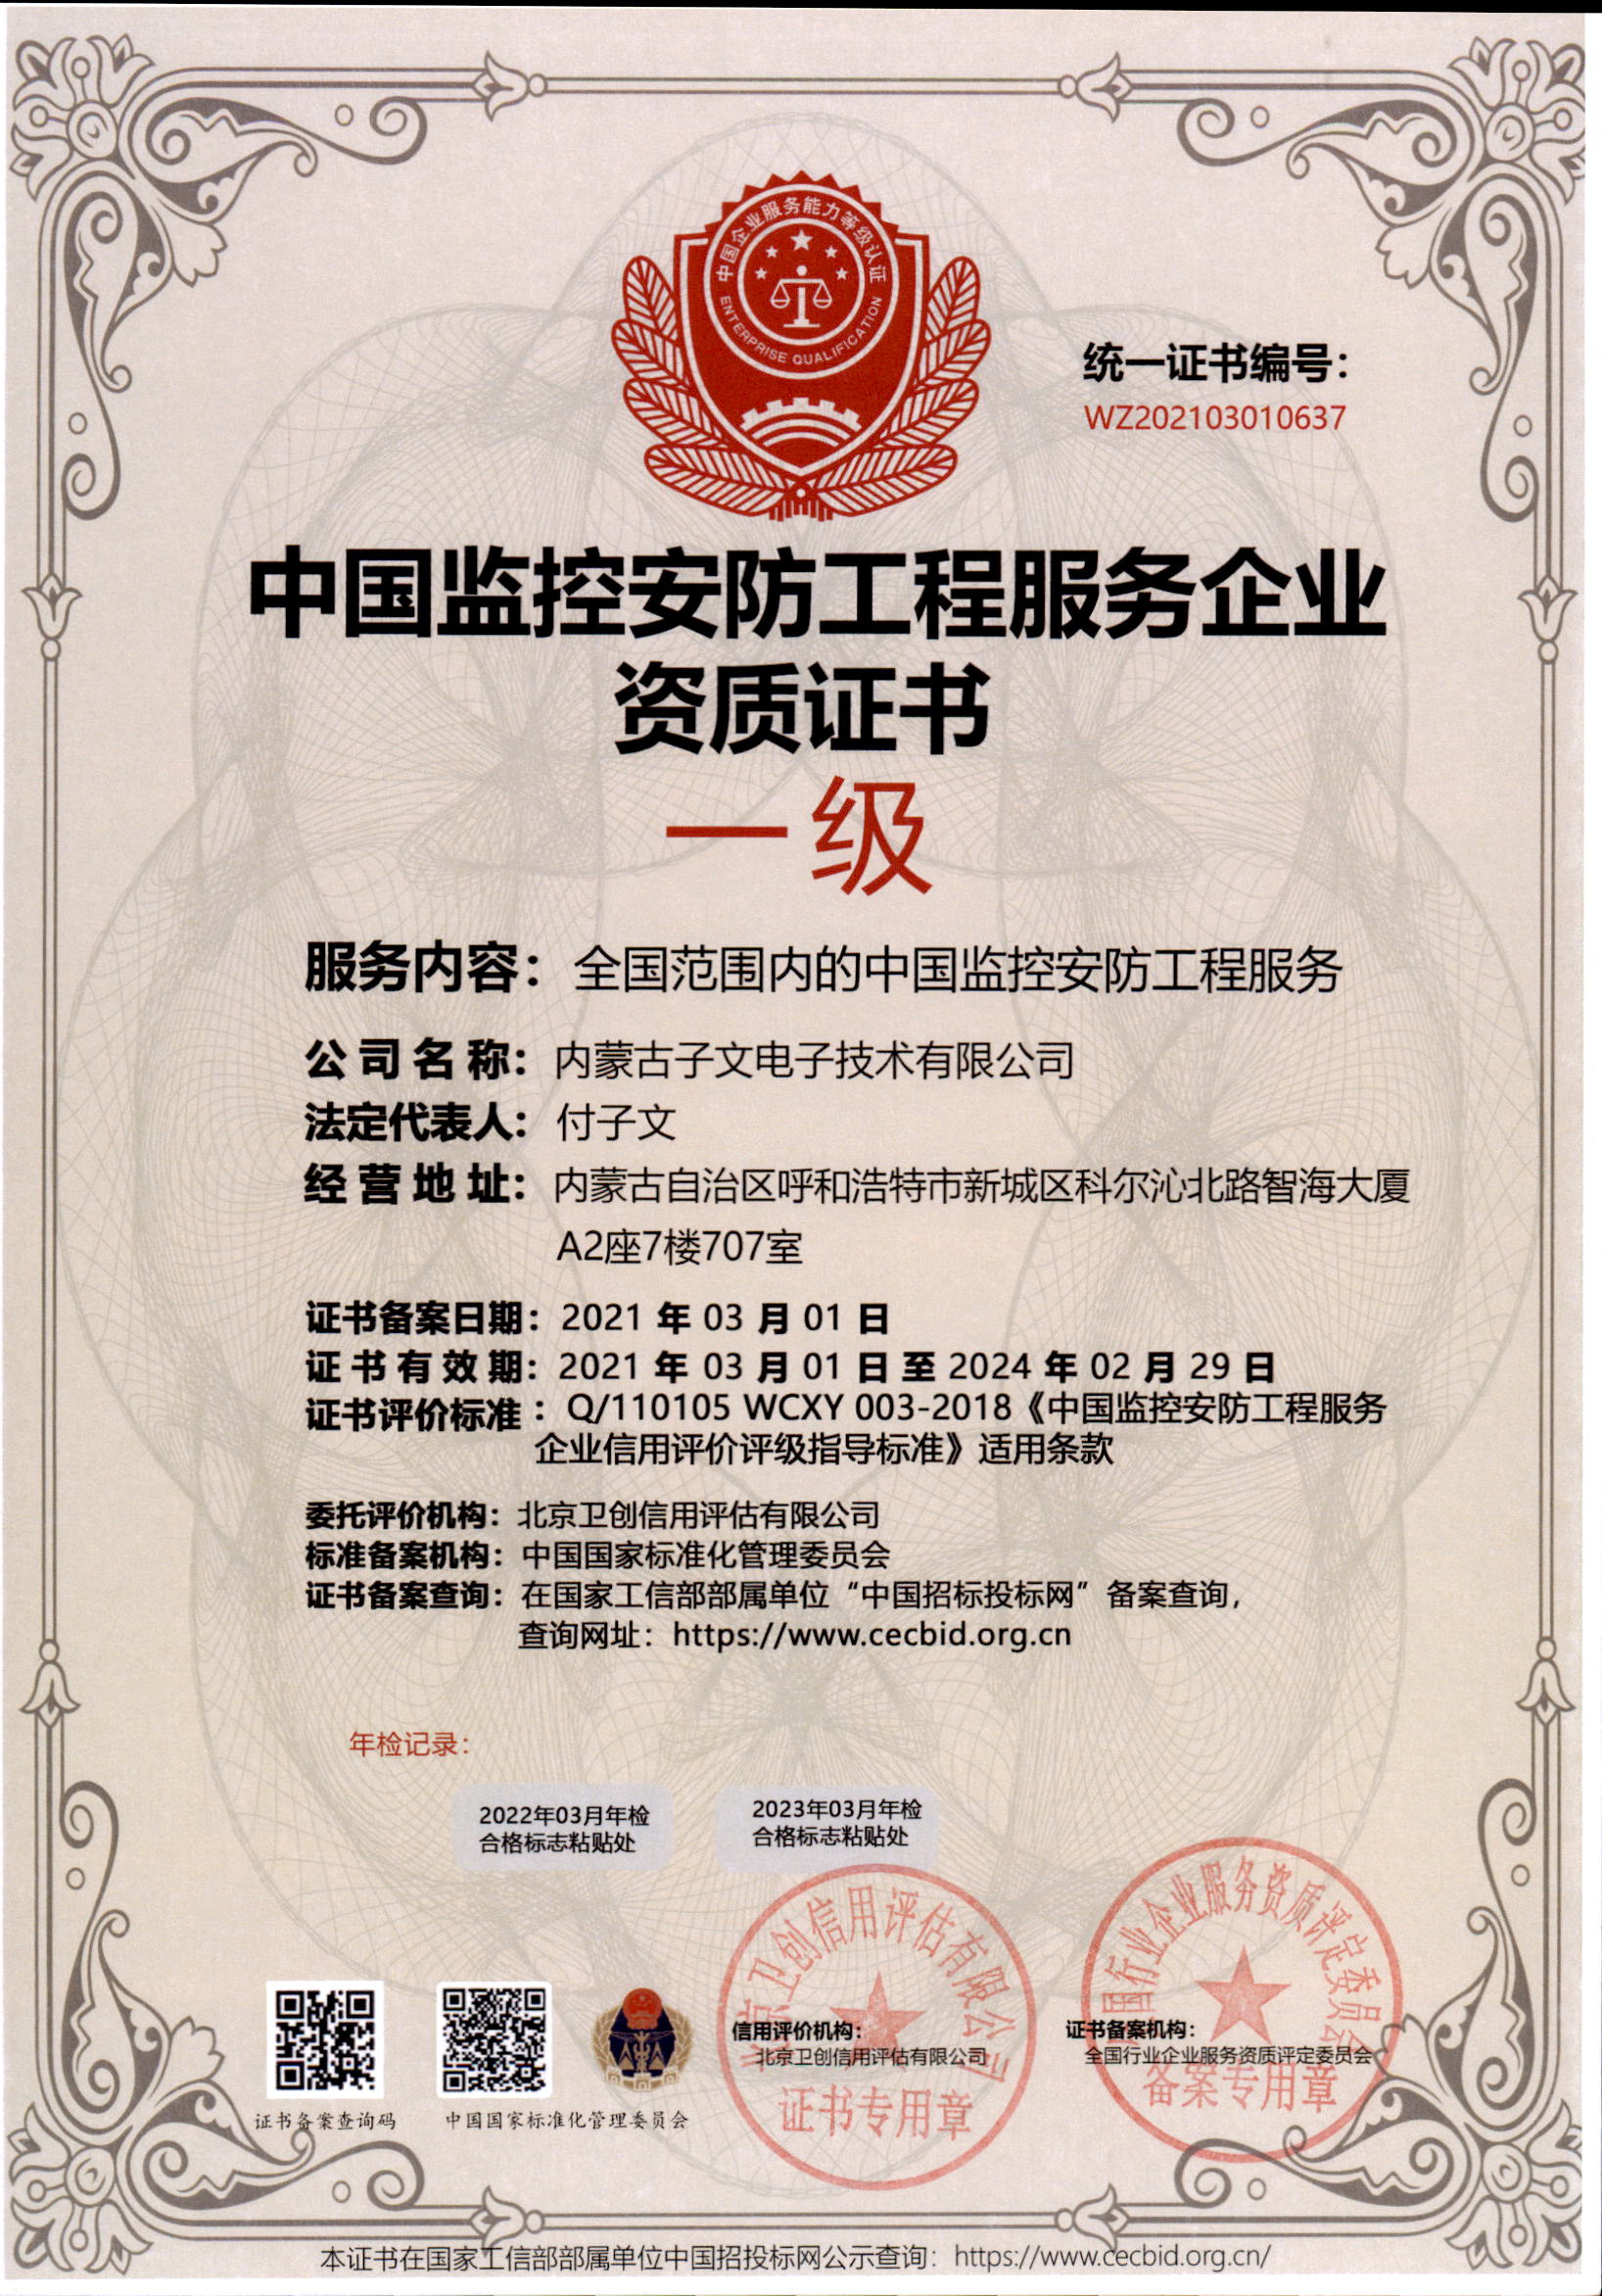 知识产权管理体系认证证书2,中国监控安防工程服务企业资质证书3,中国